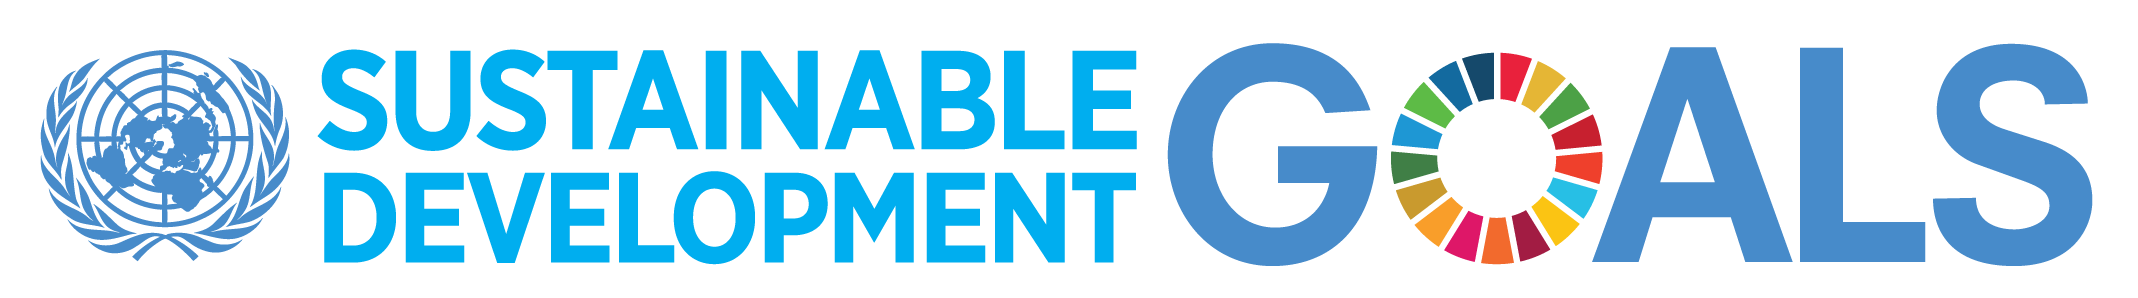 United Nations - Sustainabale Development Goals Logo